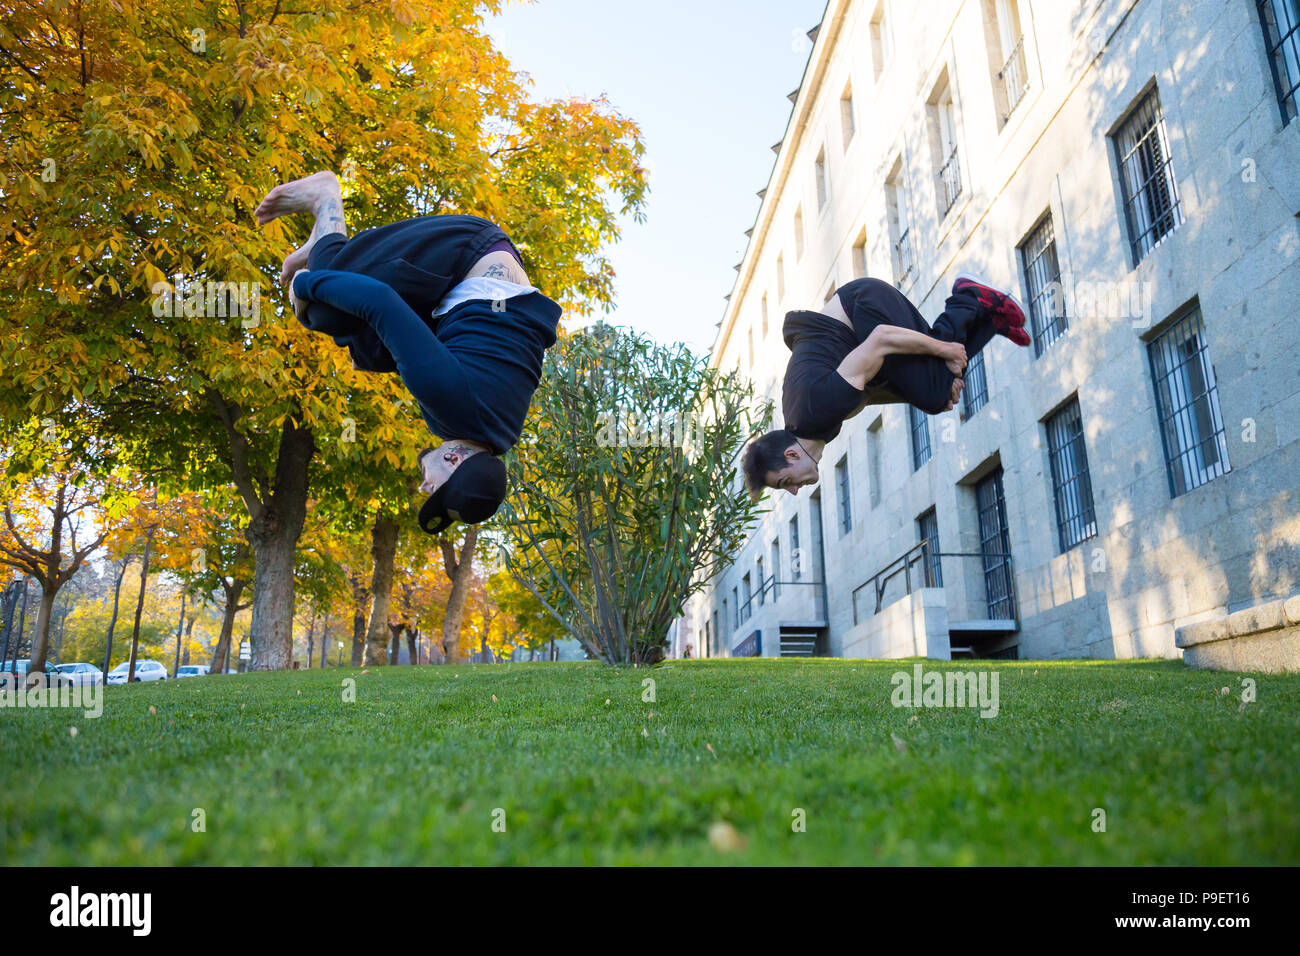 Due giovani uomini facendo un lato flip o capriola mentre essi praticano parkour sulla strada. Foto Stock